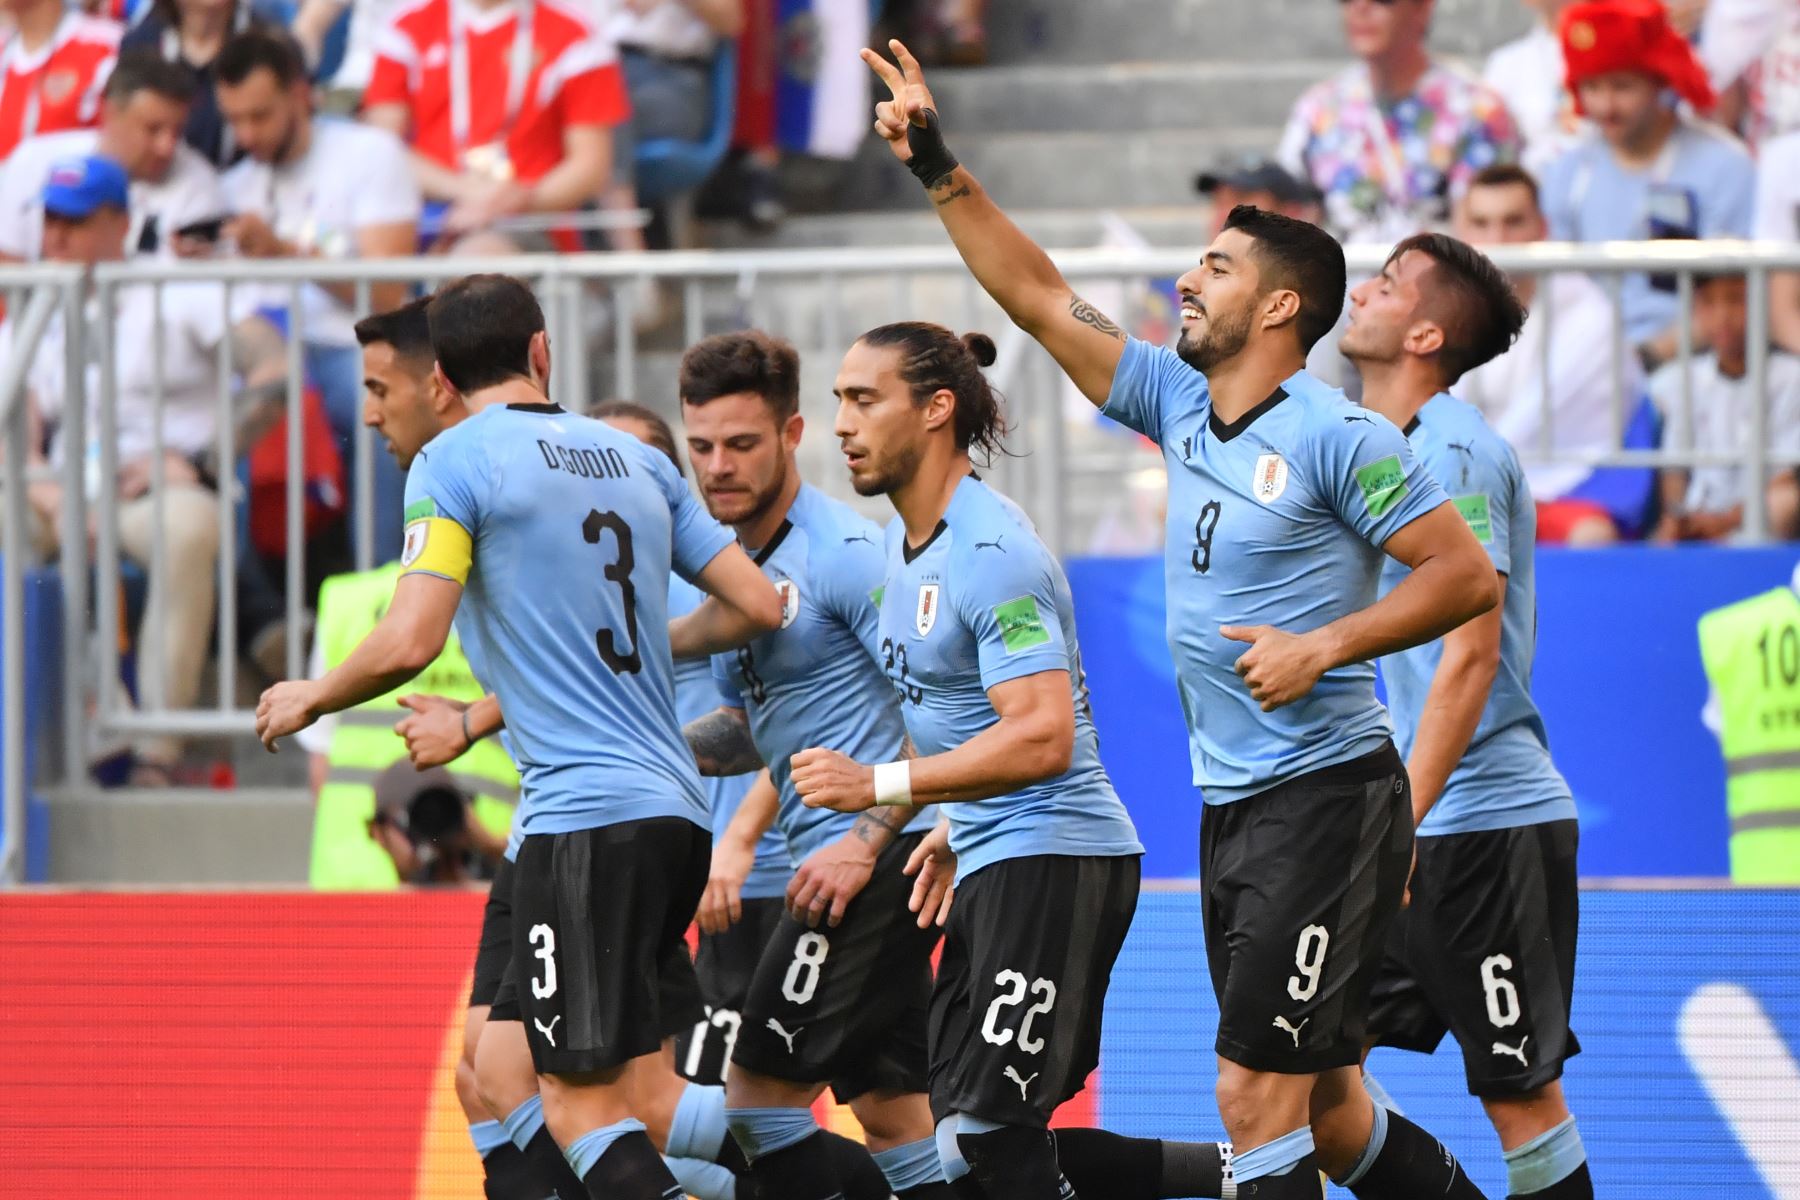 El delantero uruguayo Luis Suarez (2º) celebra con sus compañeros después de anotar un gol durante el partido de fútbol del Grupo A de la Copa Mundial Rusia 2018 entre Uruguay y Rusia en el Samara Arena de Samara el 25 de junio de 2018. / AFP